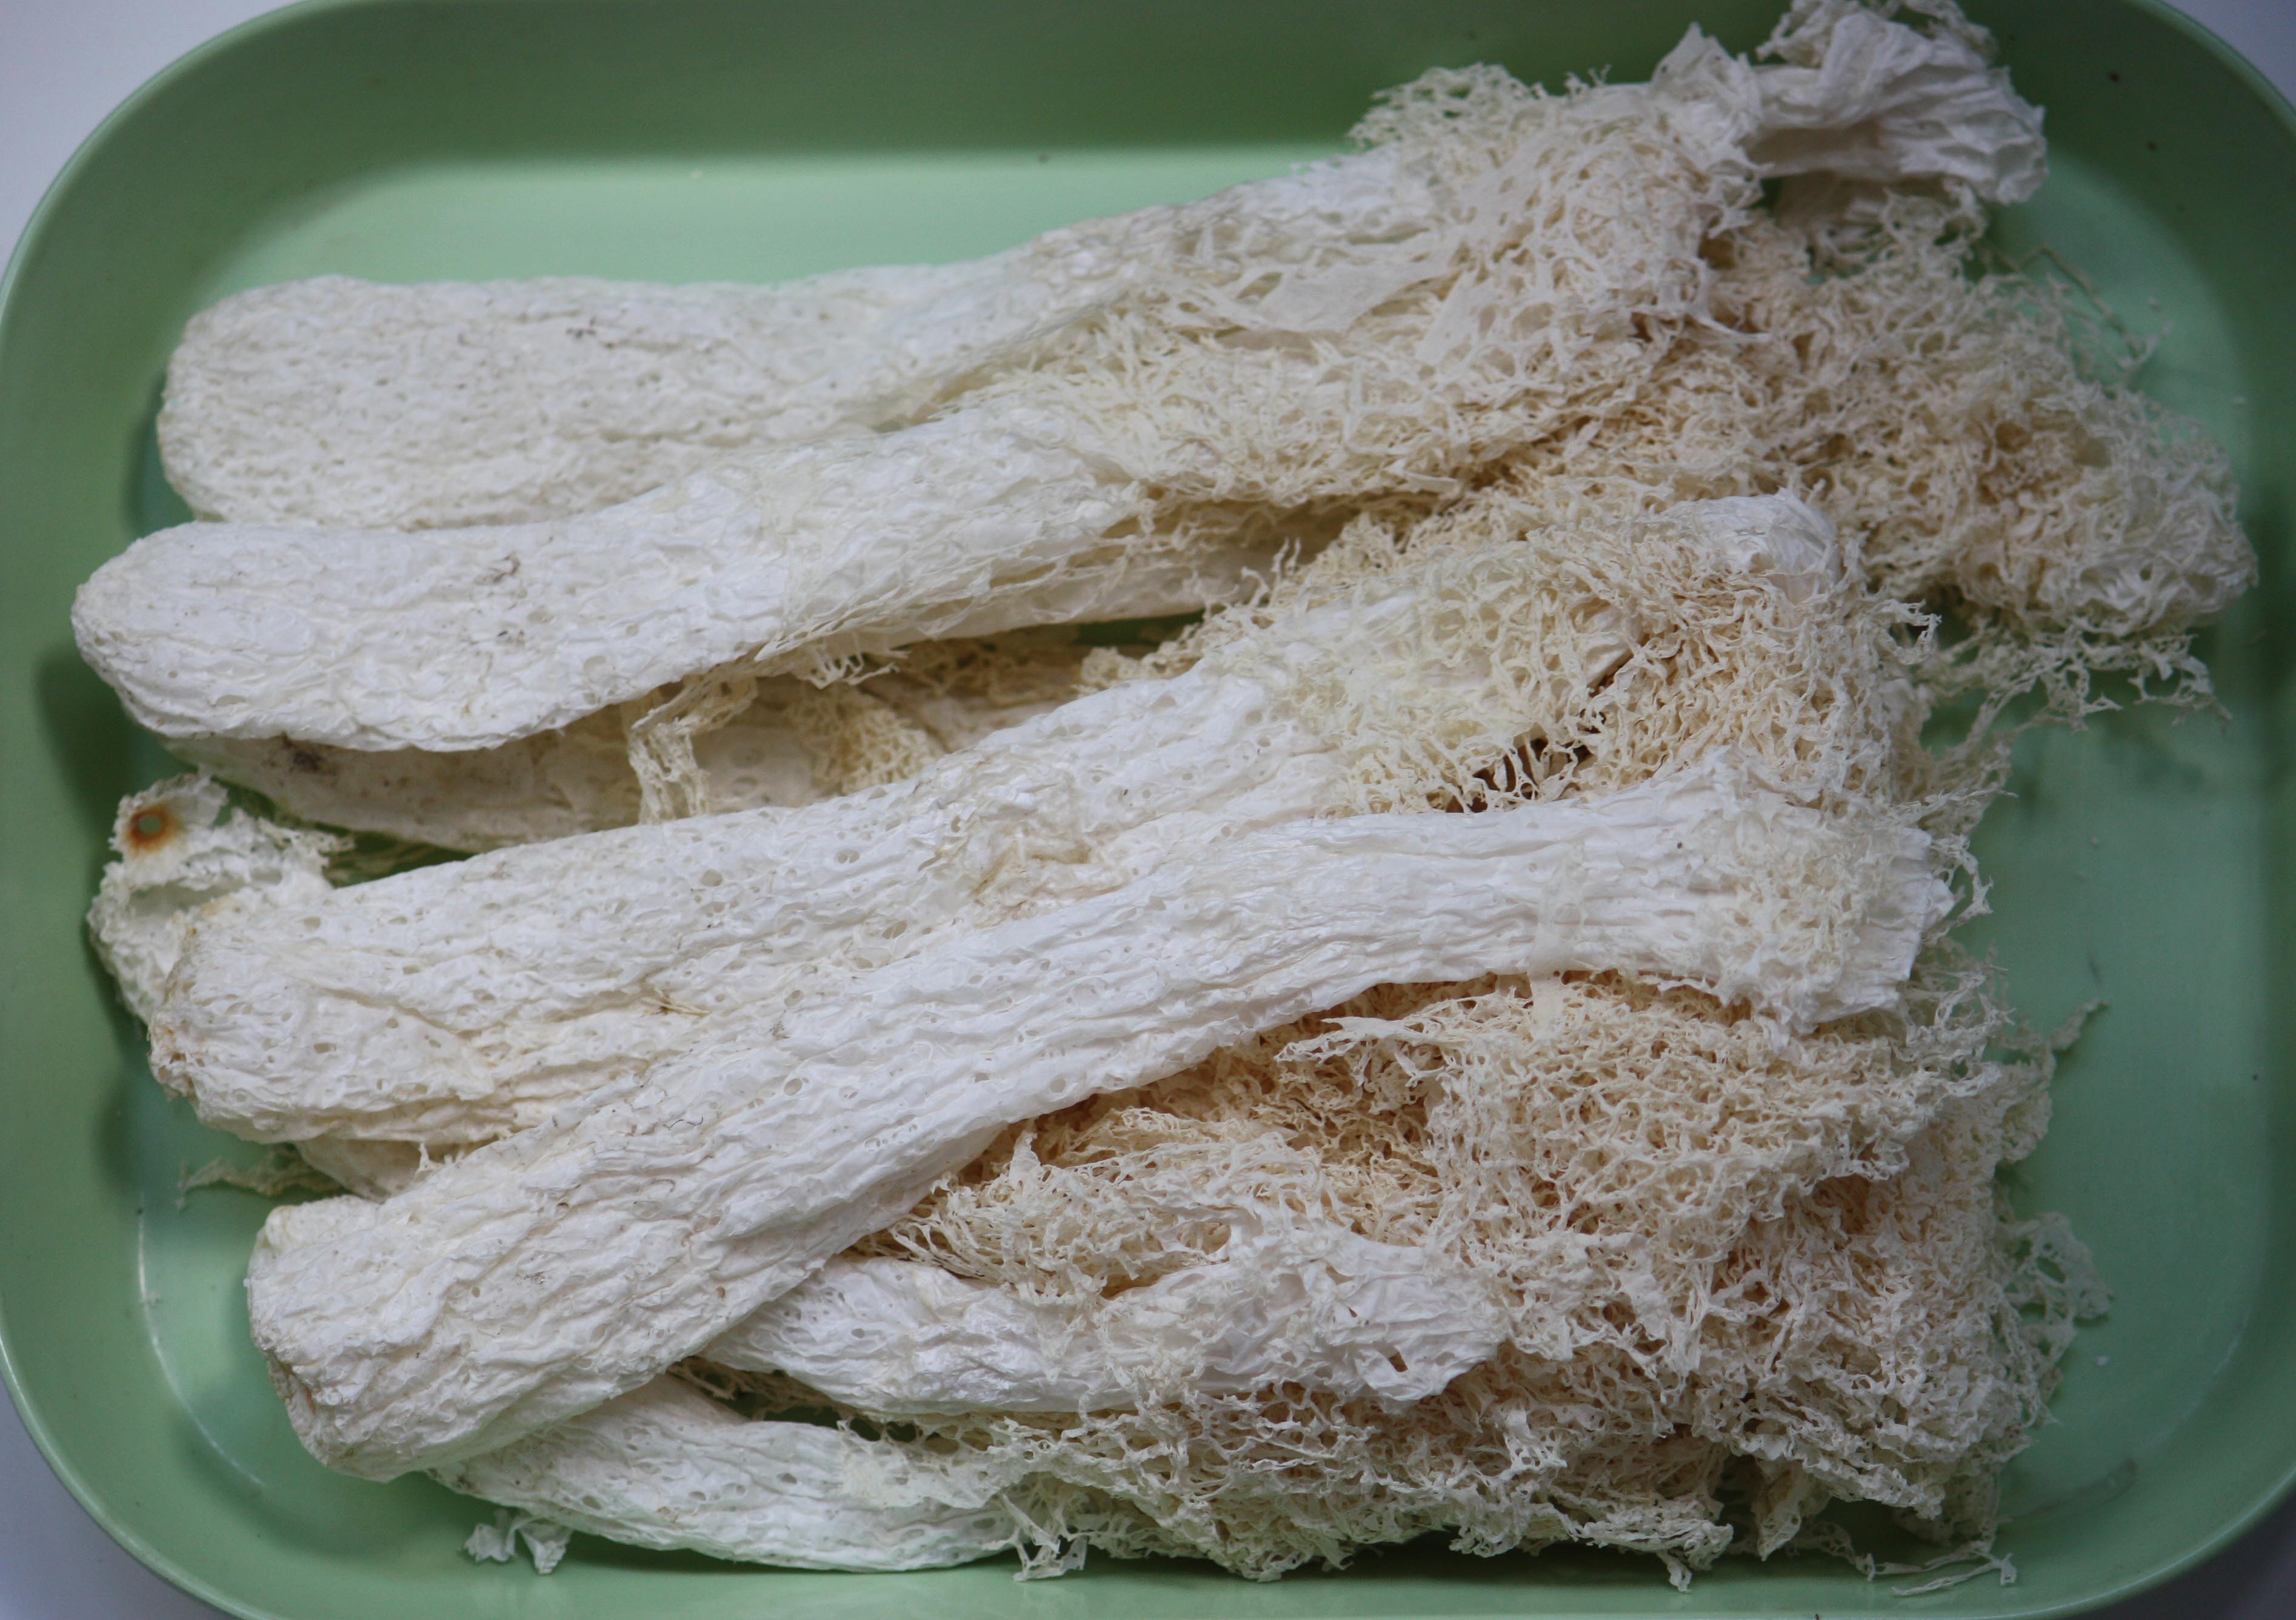 Bridal Veil Stinkhorn Mushroom by Virginia French on Prezi